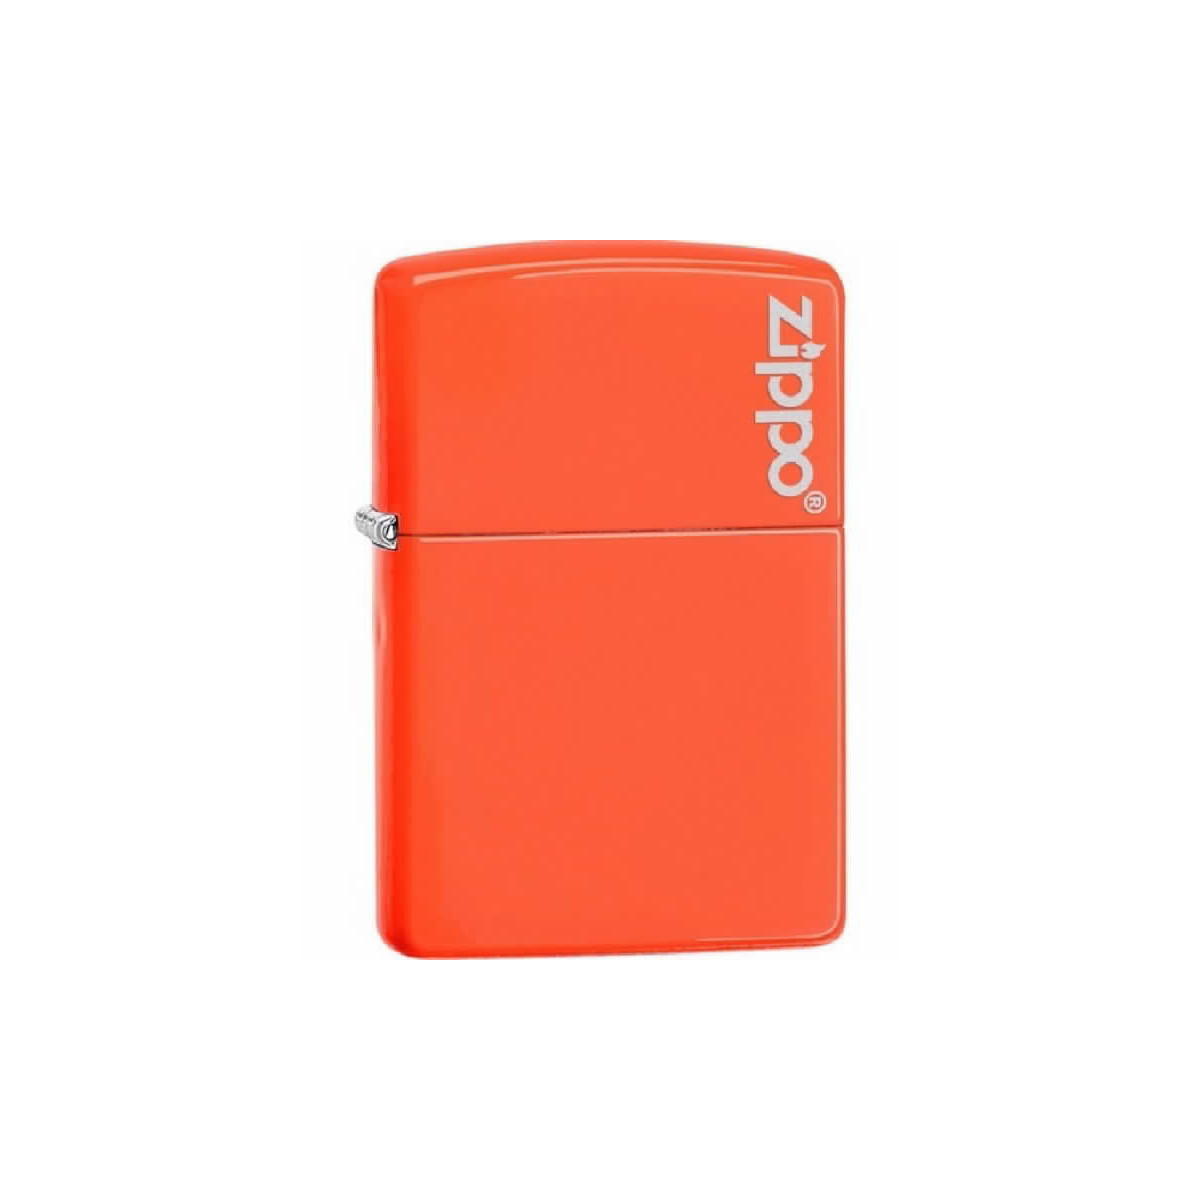 Encendedor Zippo Neon Orange - 28888ZL